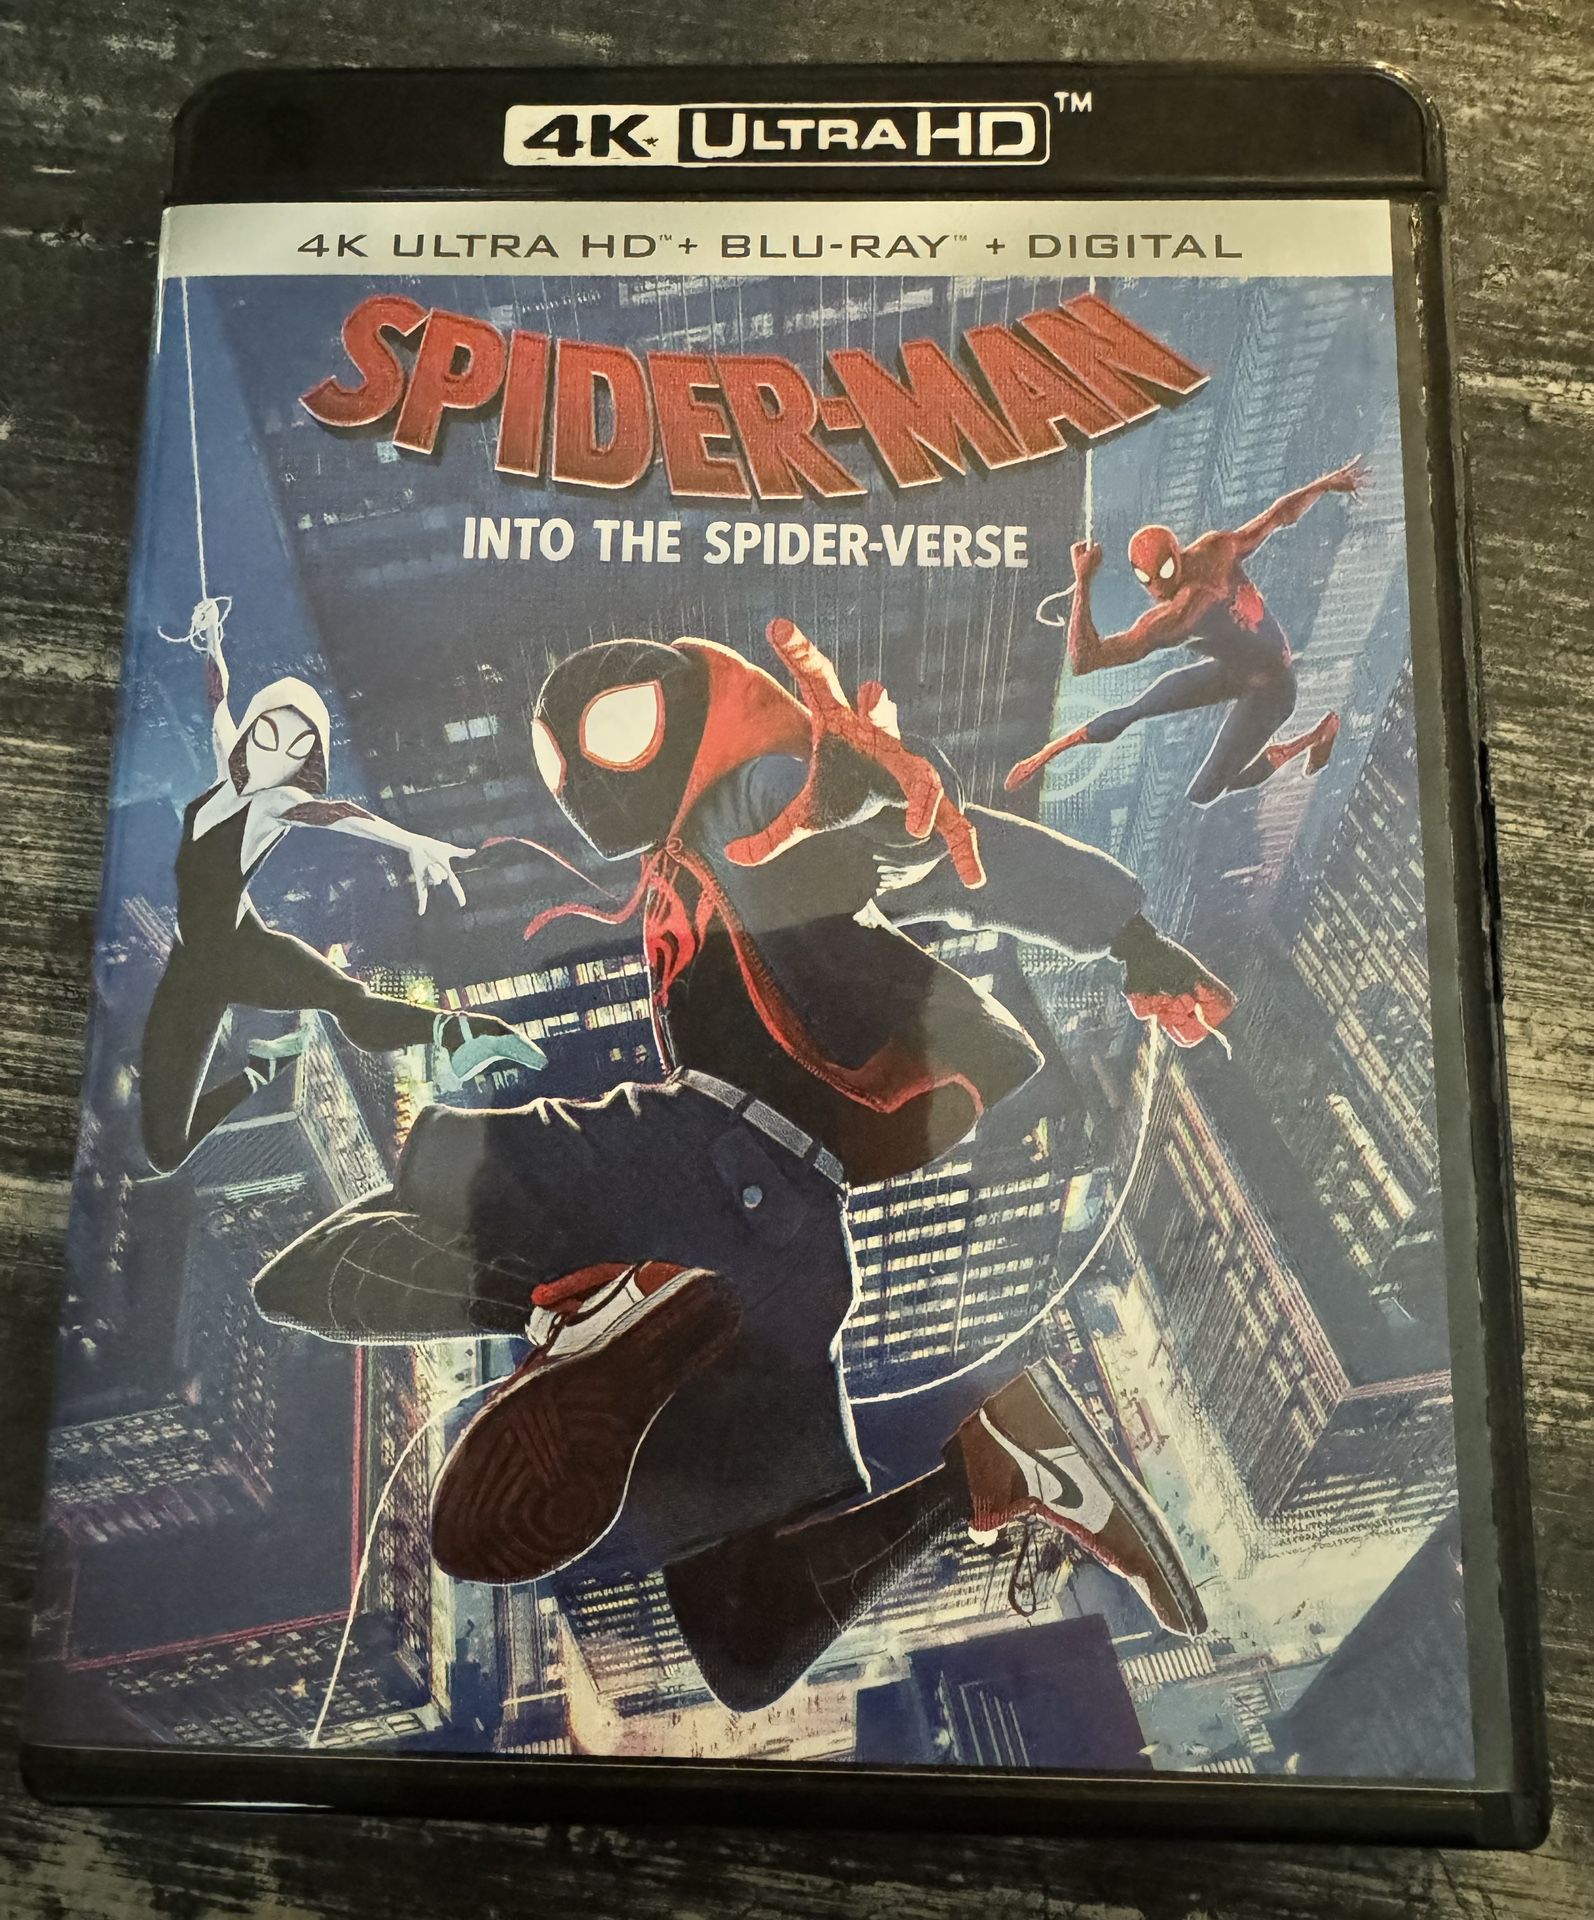 Spider-man: Into The Spider-verse